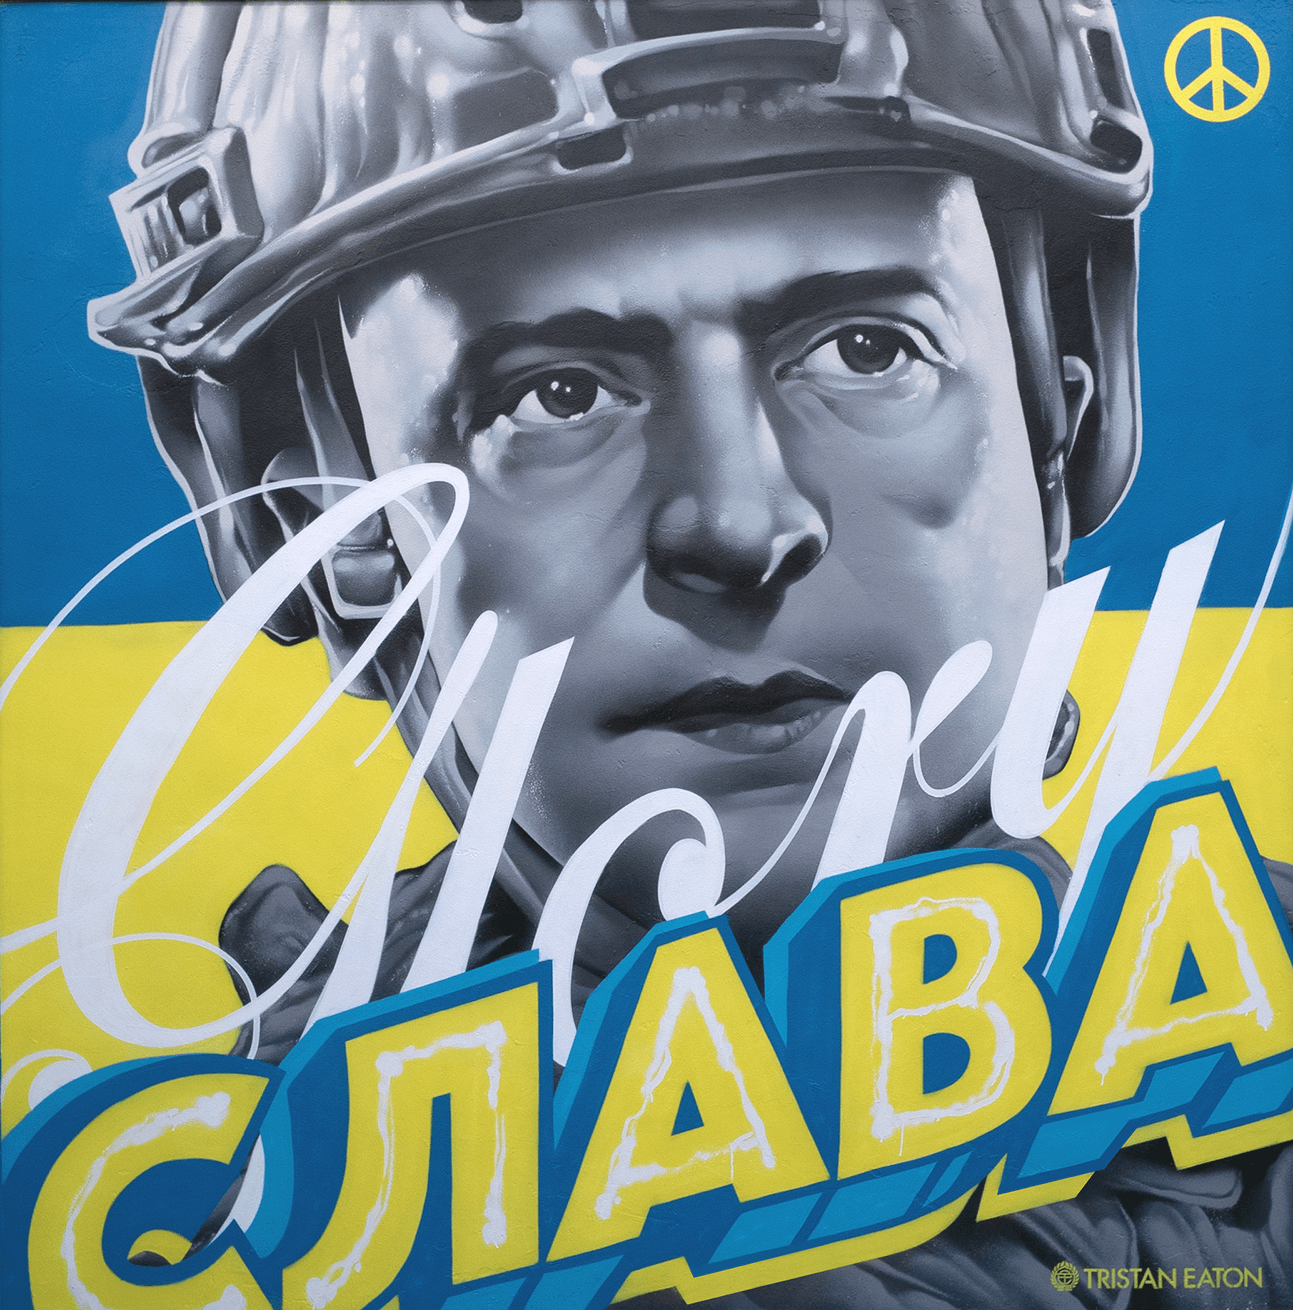 Glory to Ukraine #394/500